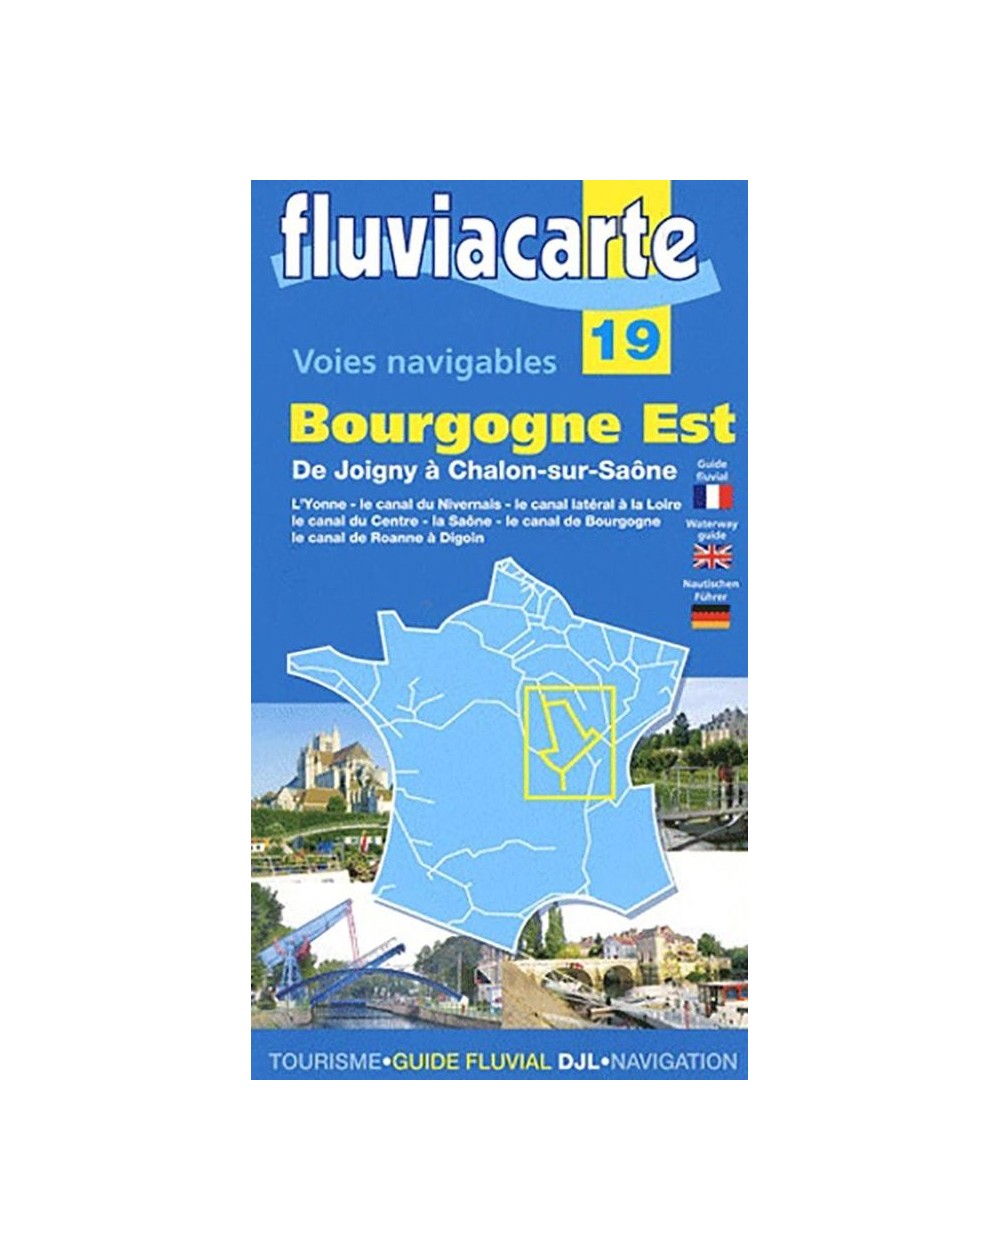 carte fluviacarte 19 - Canaux de Joigny à Chalon-sur-Saône